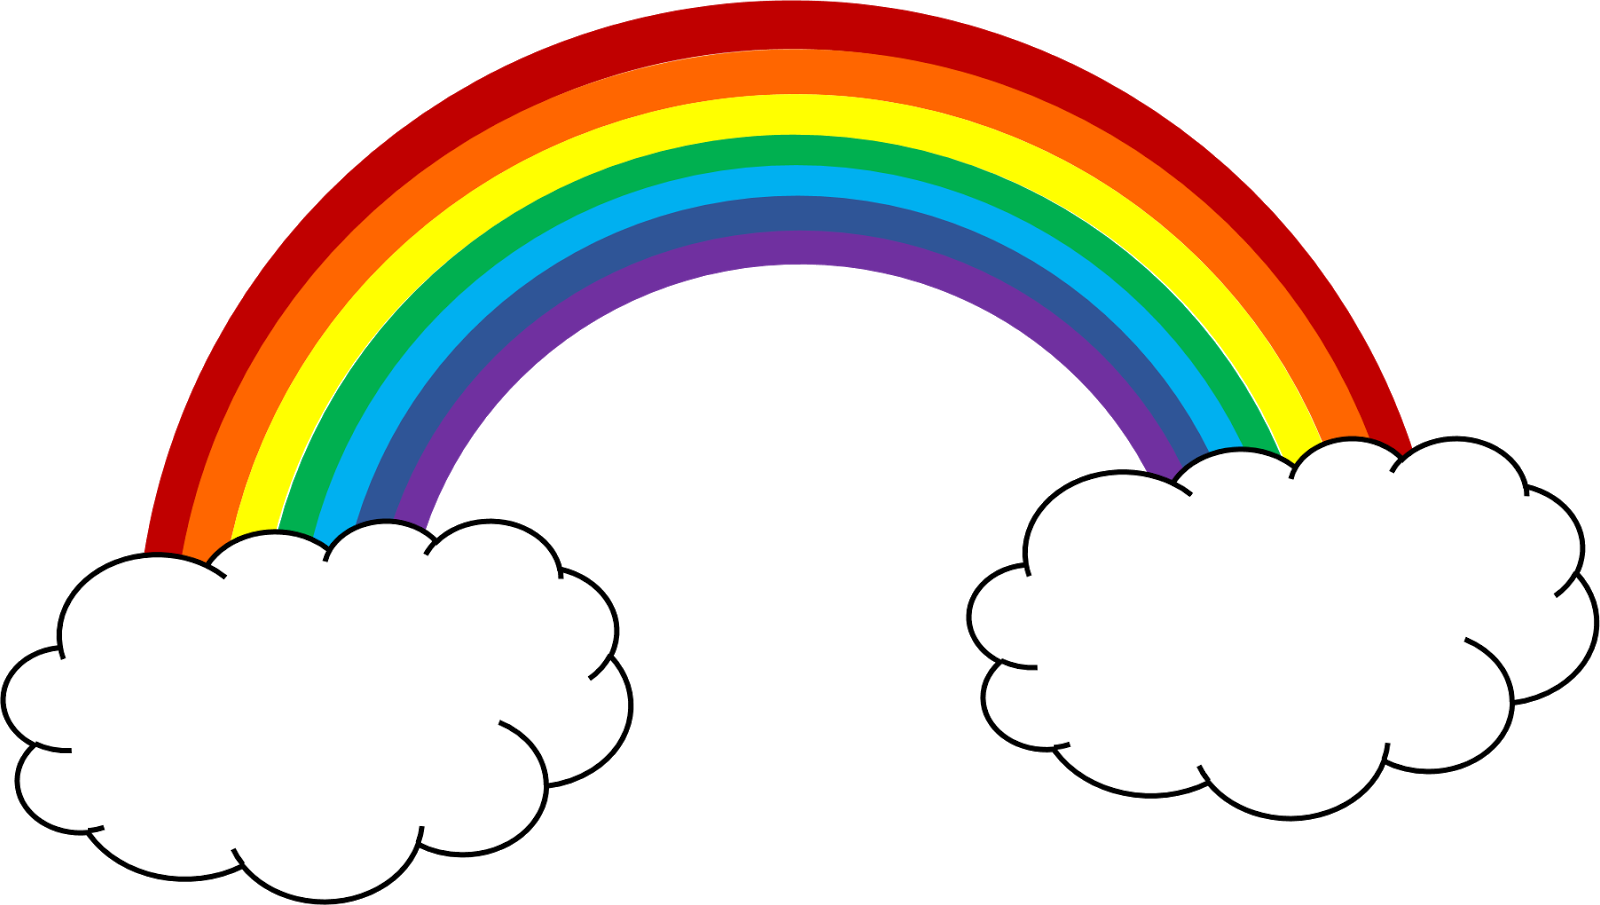 Rainbow sky cliparts free. Factory clipart cartoon